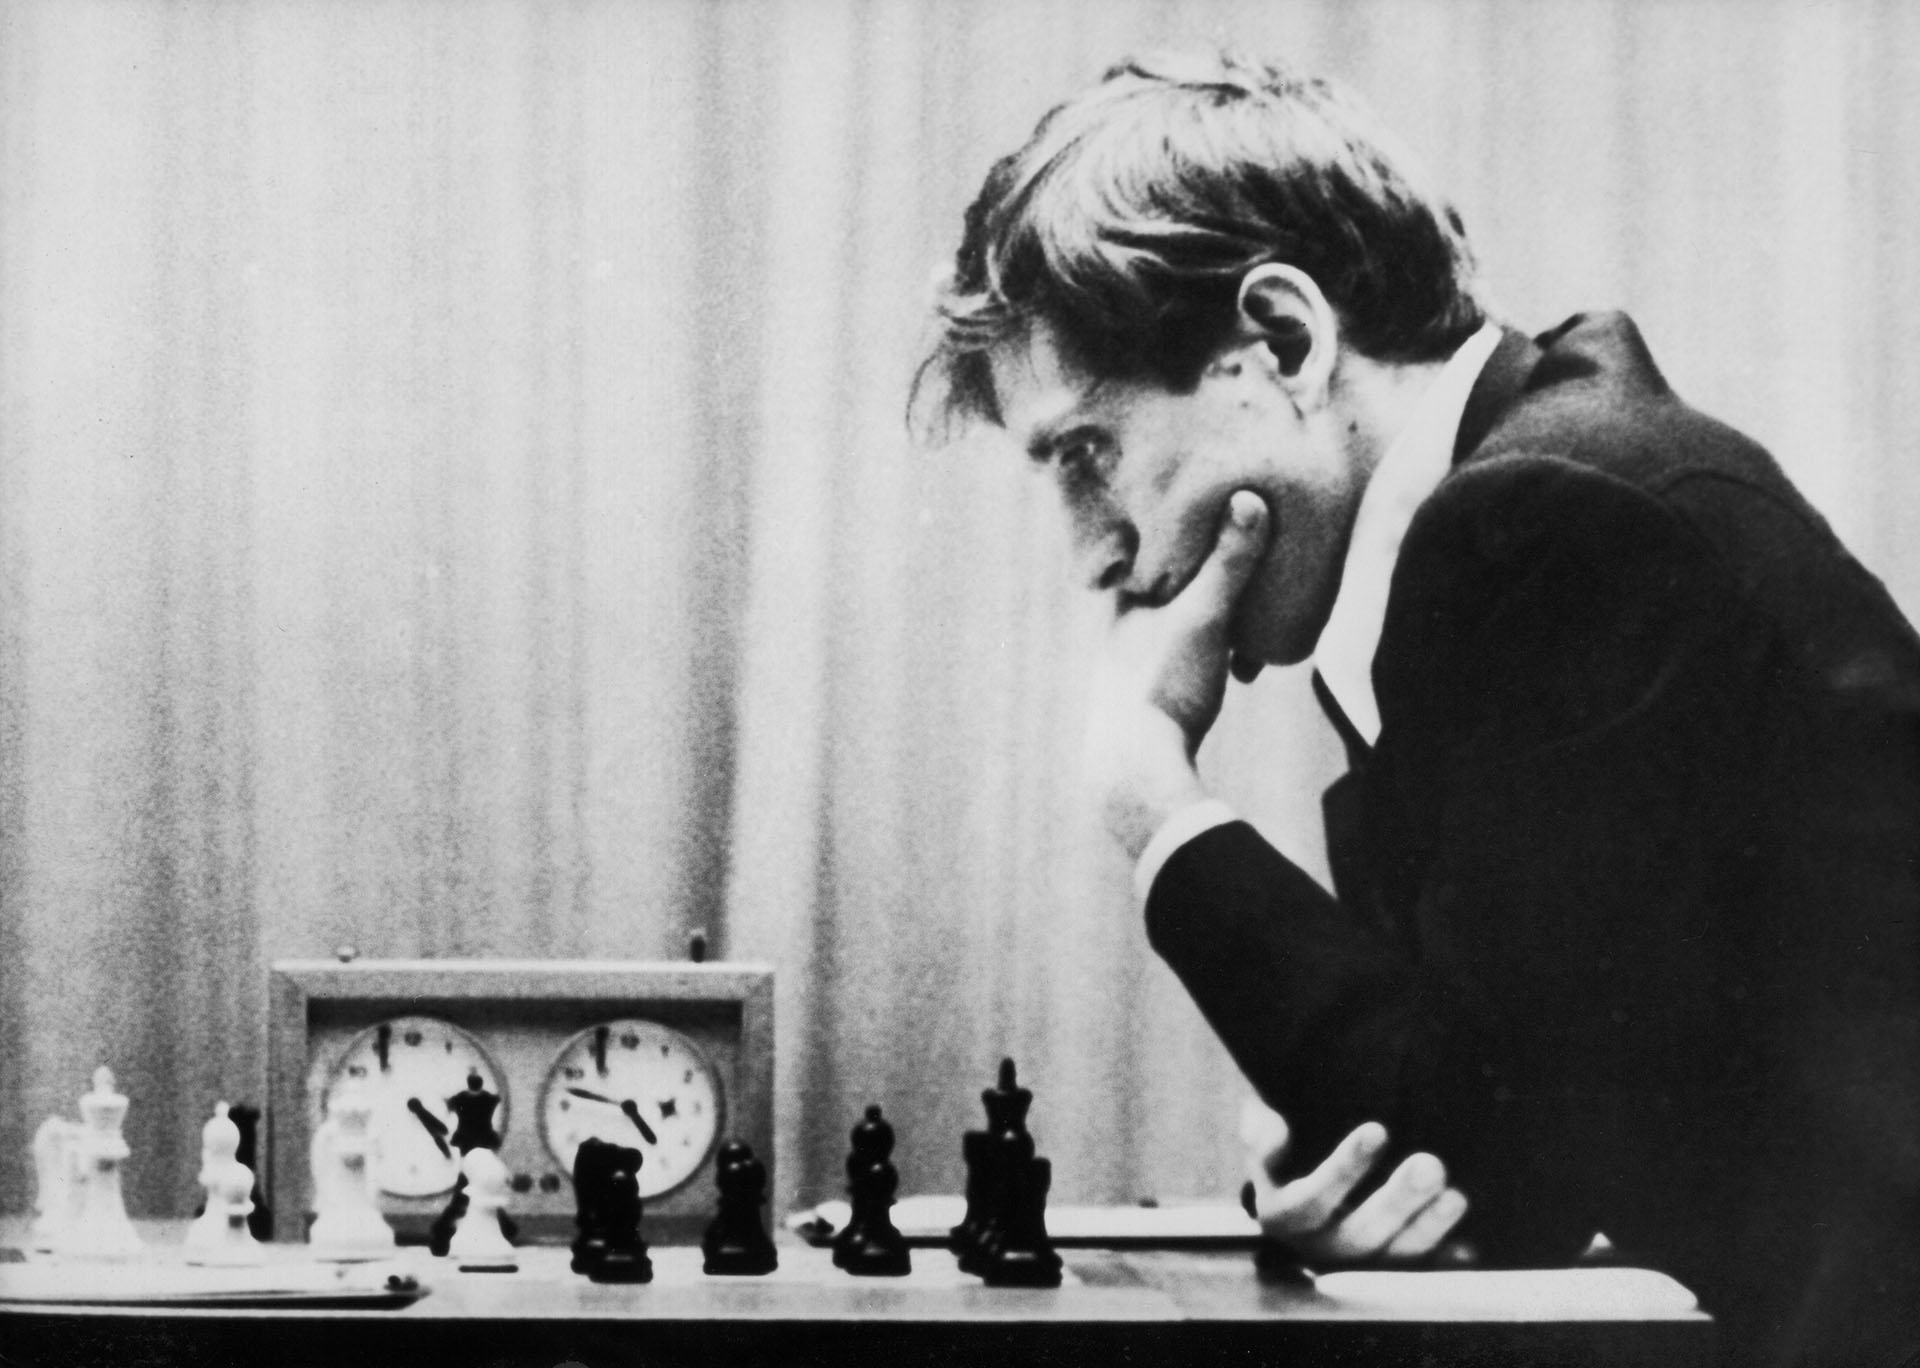 El difunto genio del ajedrez estadounidense, Bobby Fischer, durante su concurso con Boris Spassky en Islandia, agosto de 1972. (CAMERA PRESS / Chester Fox)